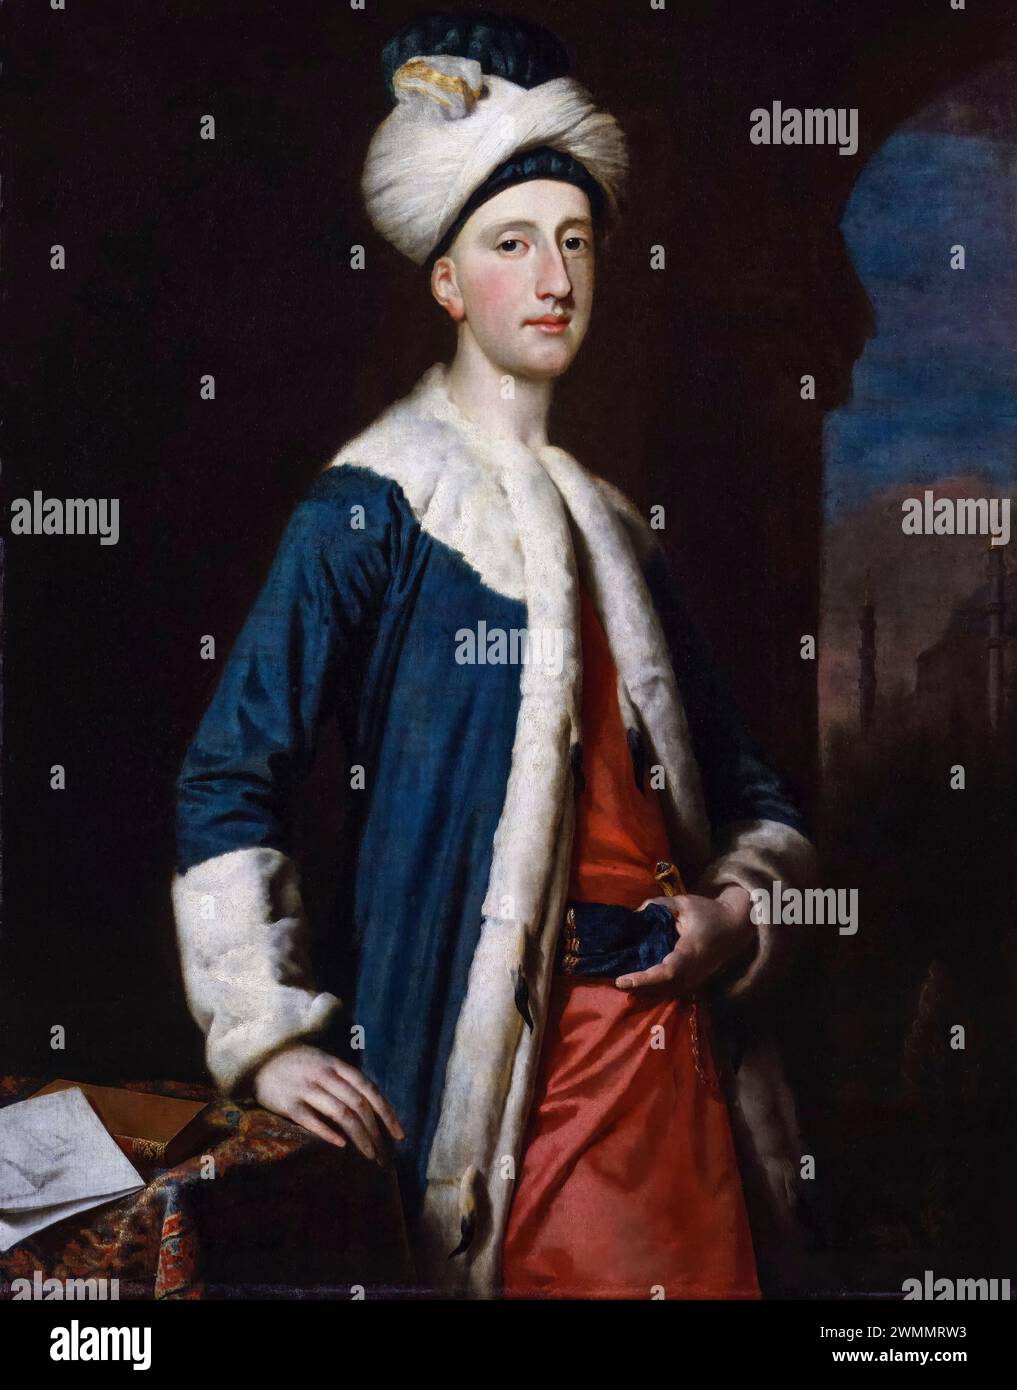 John Montagu (1718-1792), 4e comte de Sandwich, homme d'État, homme politique et inventeur du sandwich, portrait peint à l'huile sur toile par Joseph Highmore, 1740 Banque D'Images